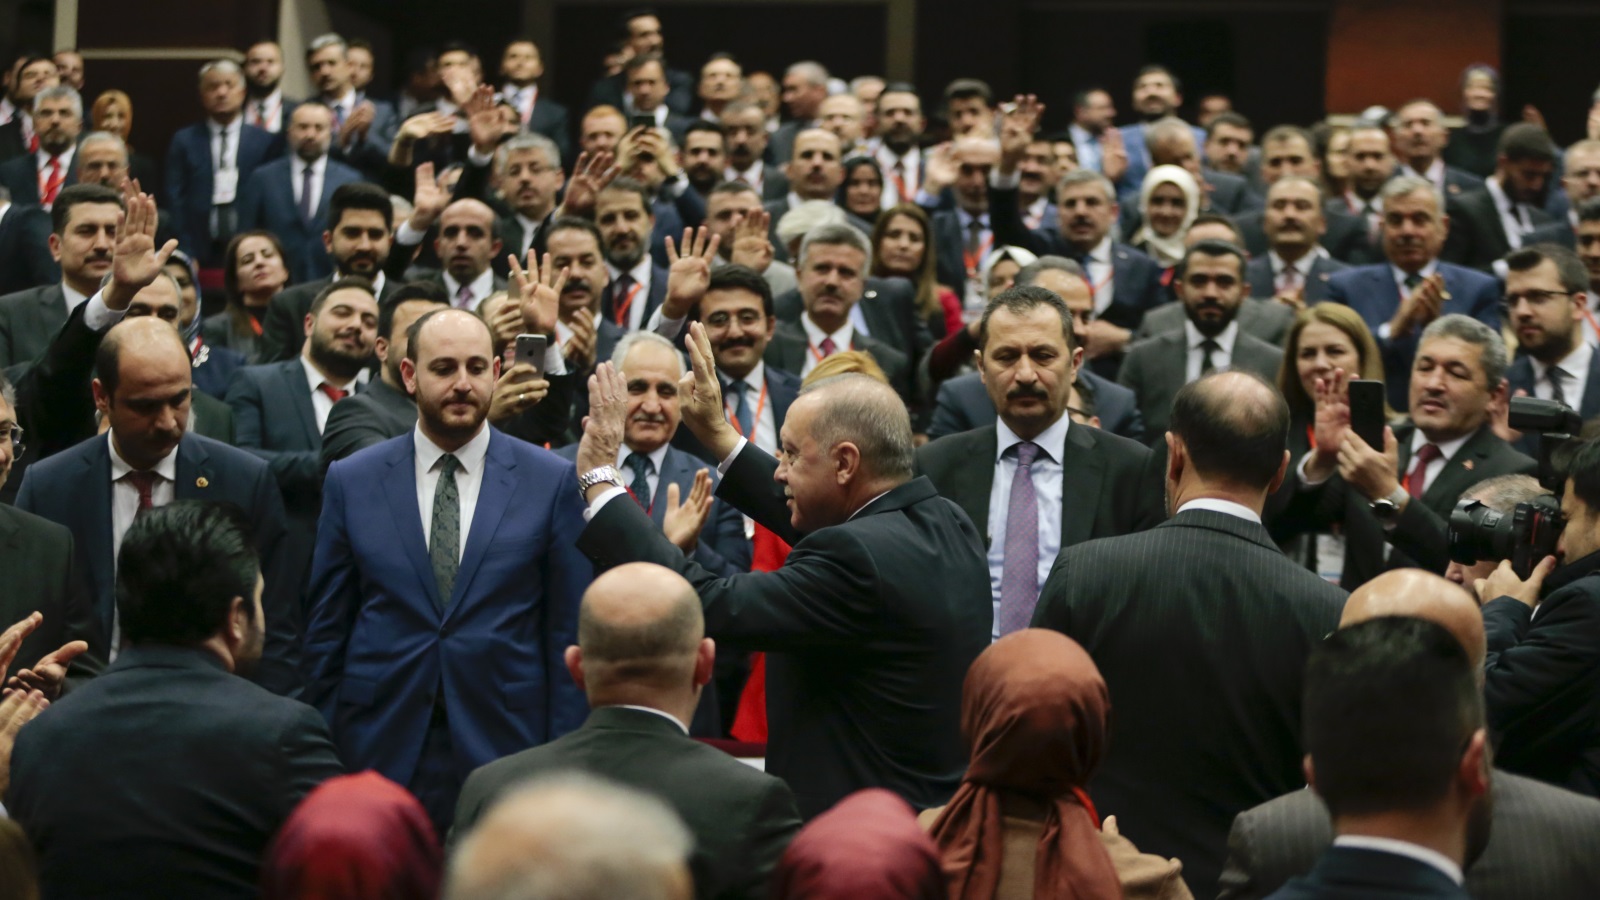 حزب العدالة والتنمية التركي قال إنه سيسرع إجراءات إرسال قوات تركية إلى ليبيا (الأناضول)